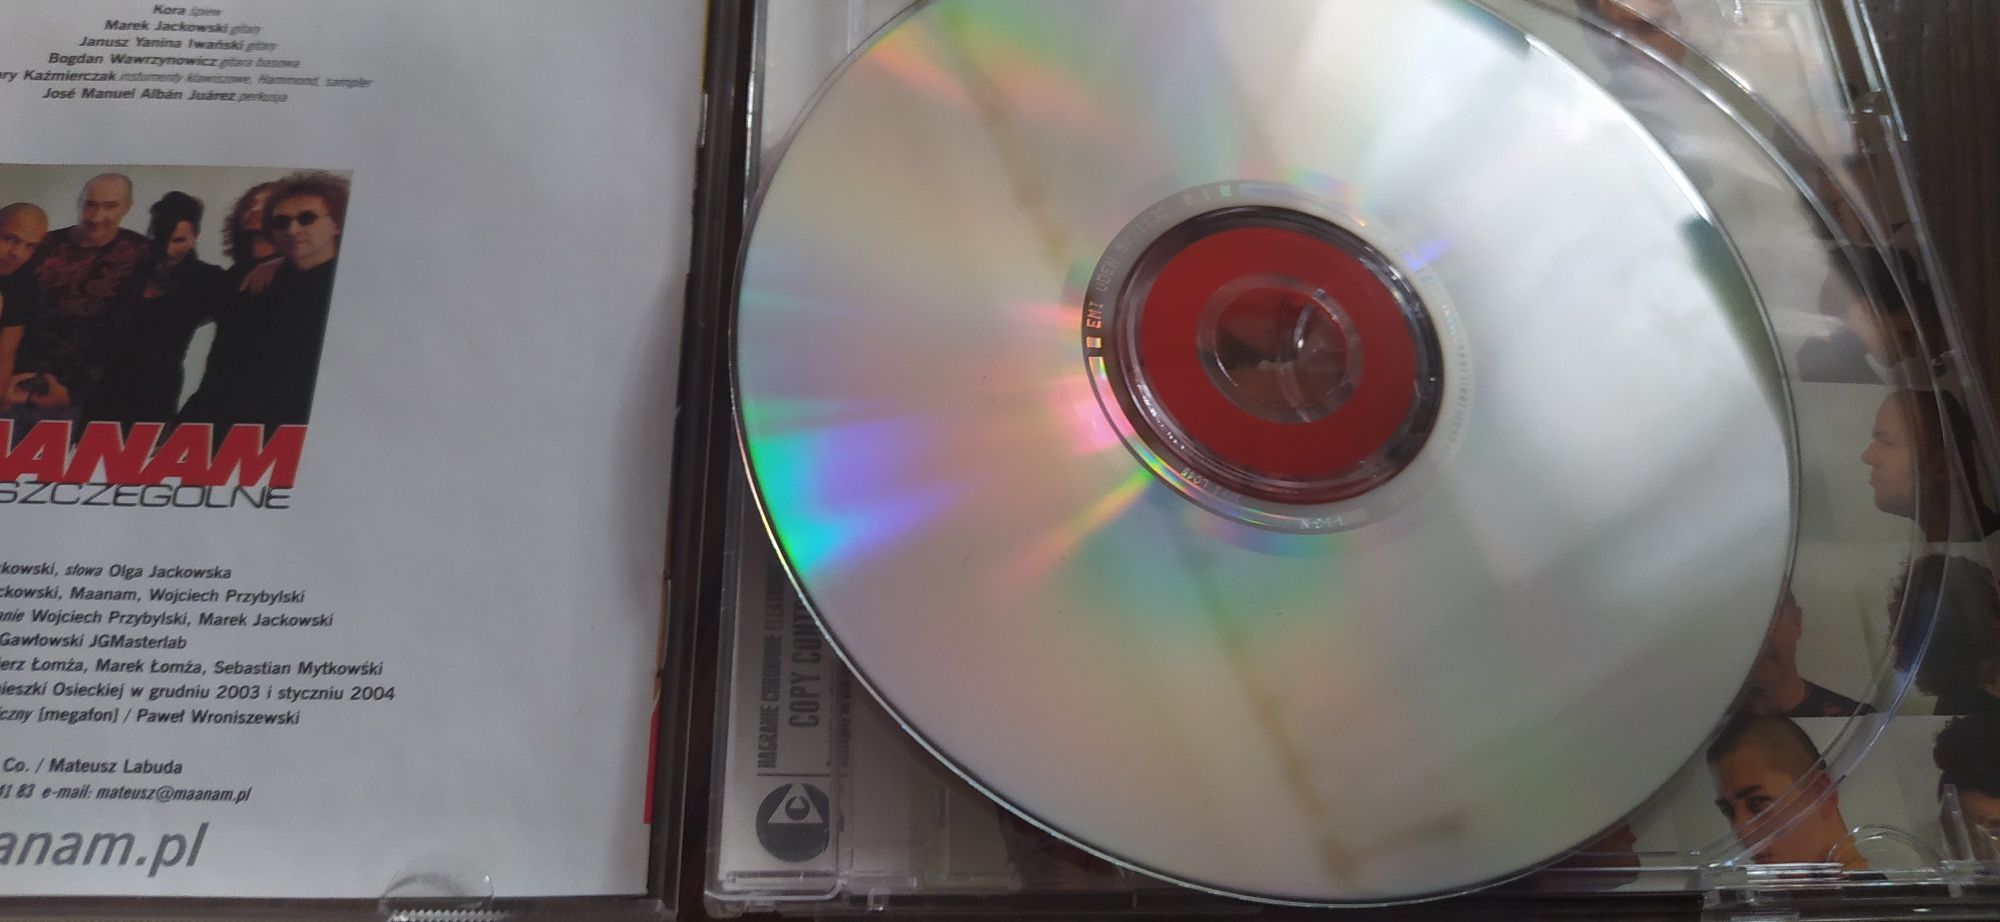 Maanam znaki szczególne CD